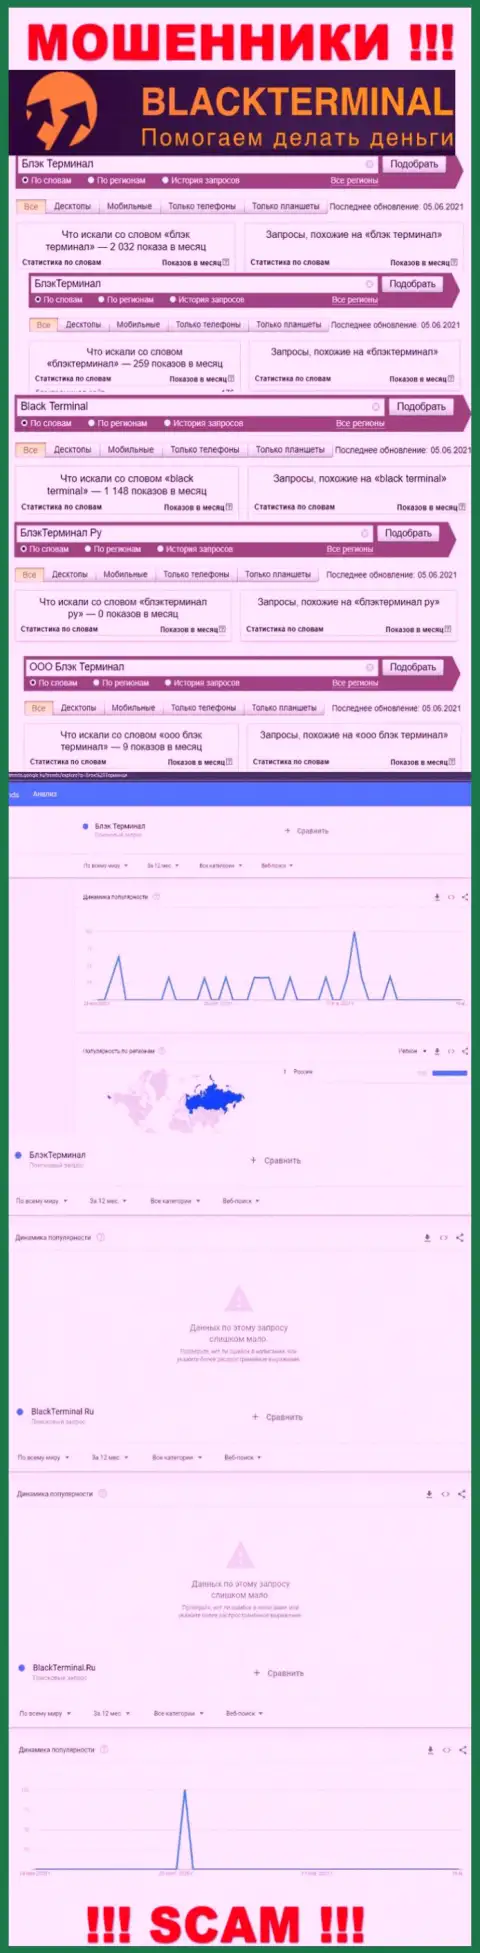 Число online-запросов данных о мошенниках BlackTerminal Ru во всемирной internet сети